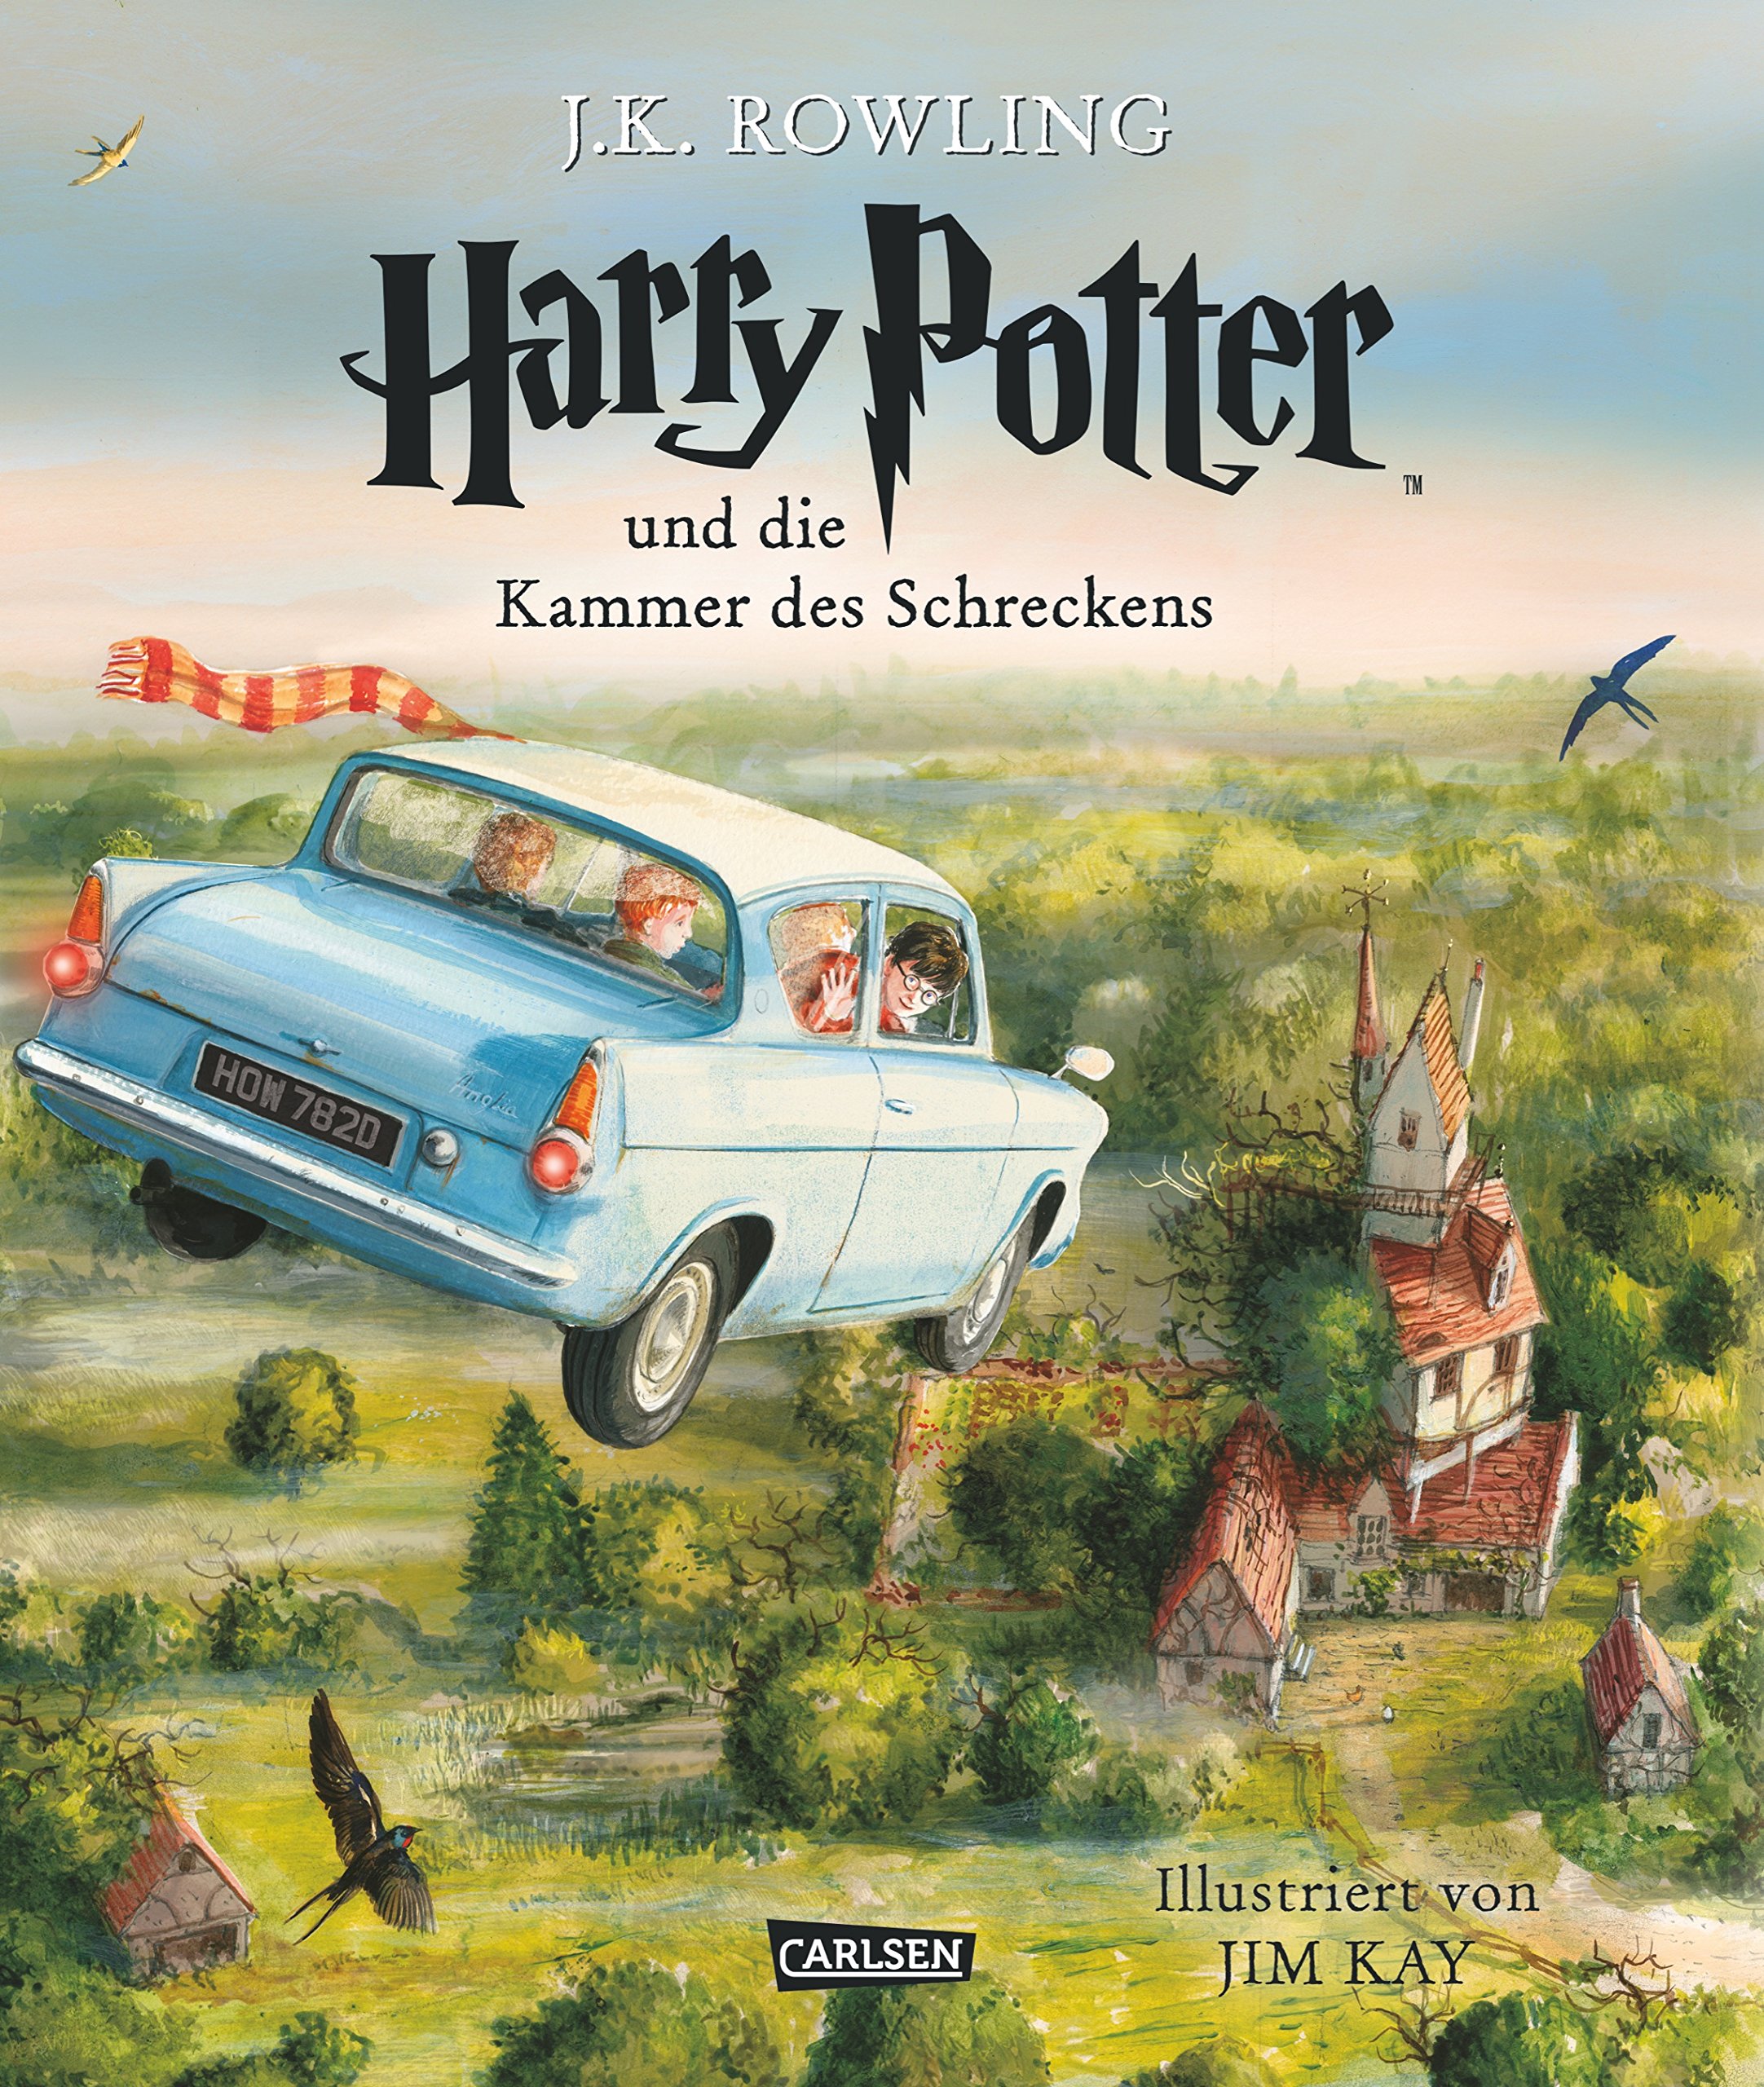 Buch: "Harry Potter und die Kammer das Schreckens" als illustrierte Schmuckausgabe